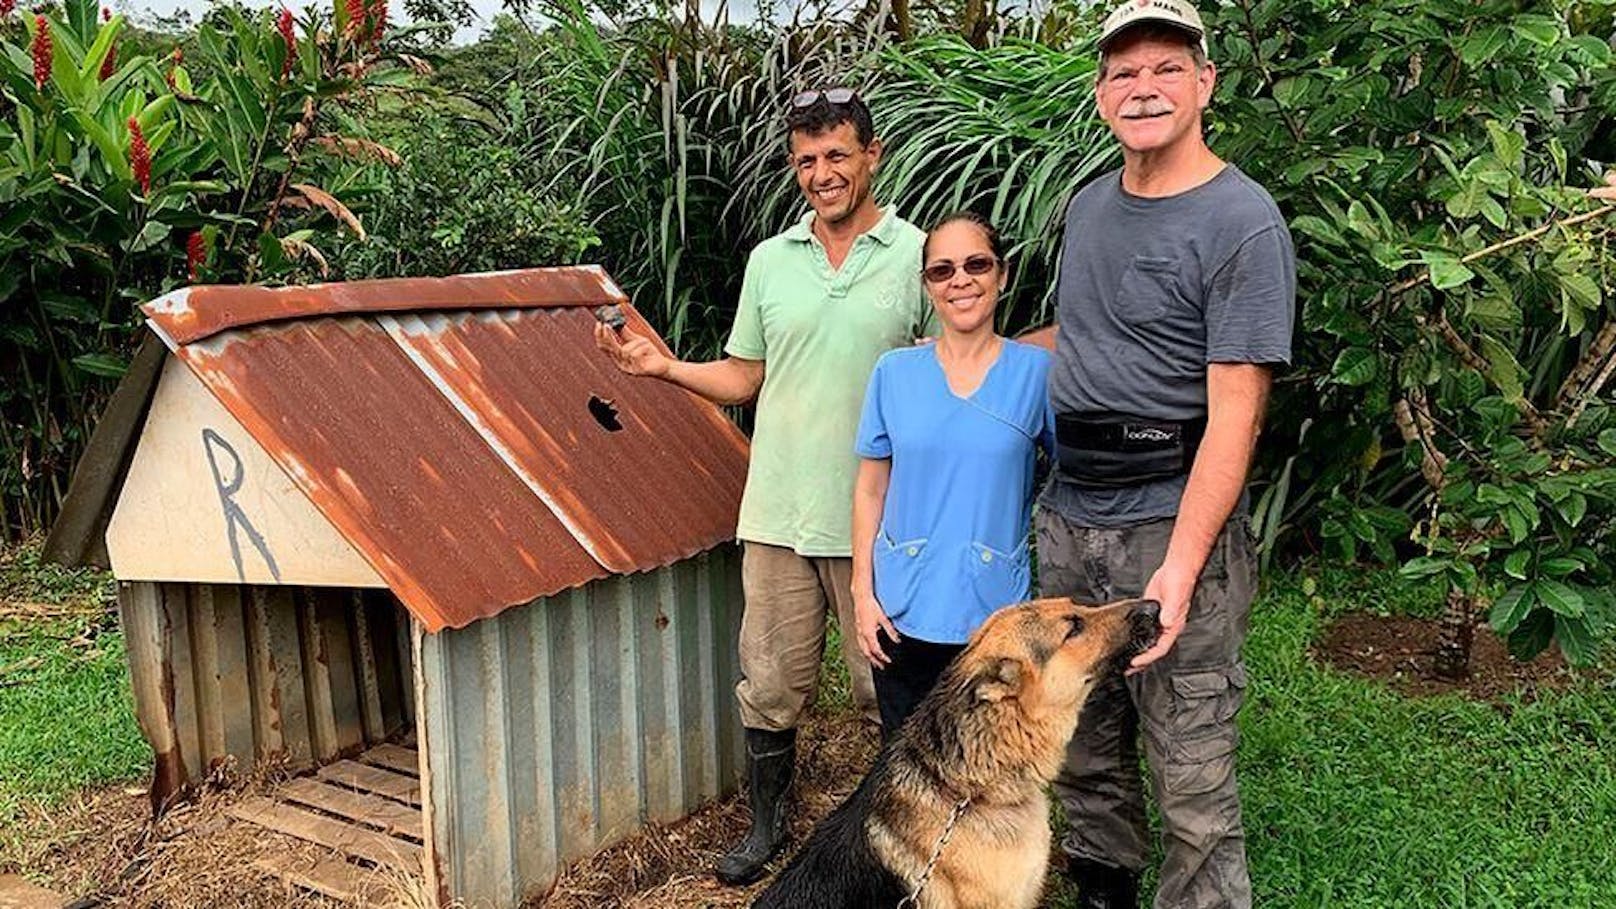 Der Deutsche Schäferhund Roky aus Costa Rica hatte großes Glück: Ein Meteorit verfehlte ihn nur haarscharf in seiner Hundehütte.